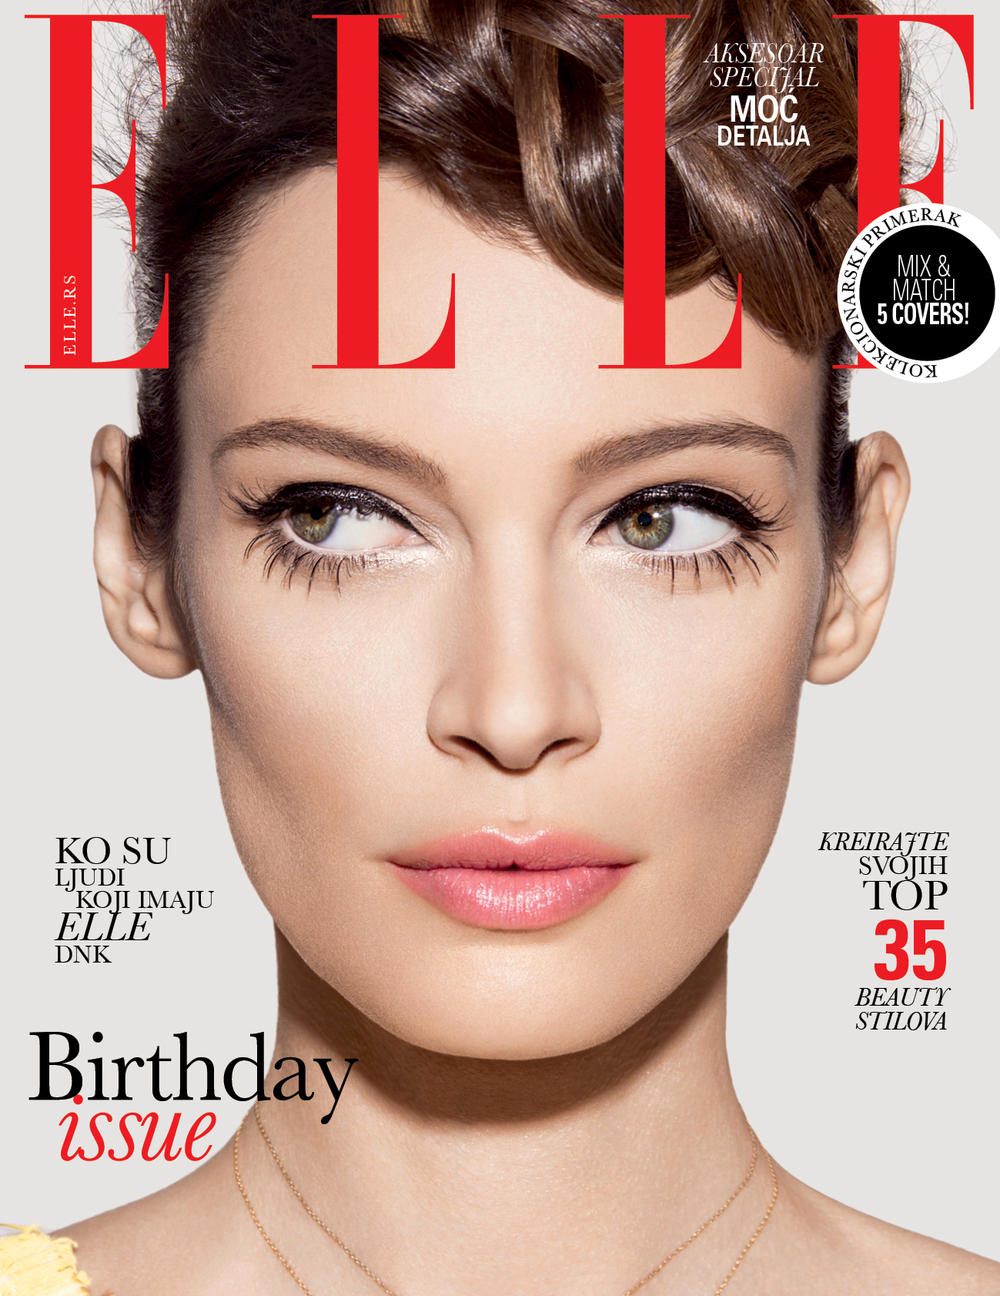 Srpsko izdanje Elle magazina nastavlja da osmišljava naslovnice koje ostavljaju trag na domaćoj (ali i regionalnoj) sceni magazina. Ne čekajte ni časa, i obezbedite svoj kolekcionarski broj. Rođendansko izdanje Elle magazina je u prodaji od 22. aprila.